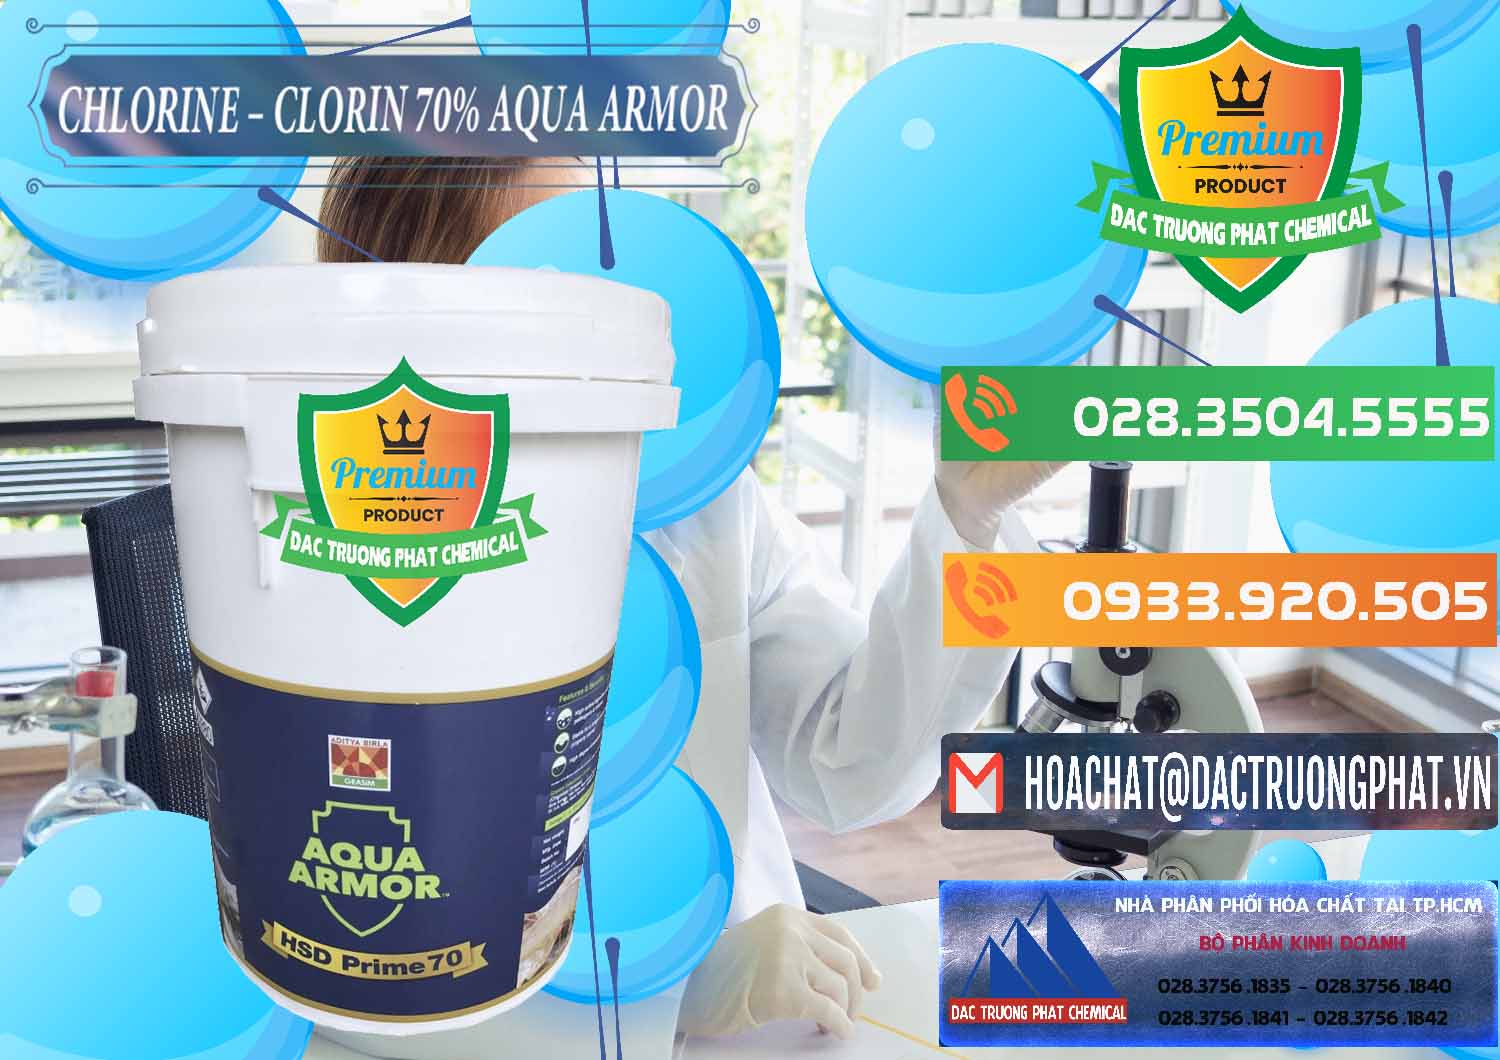 Nhà nhập khẩu ( bán ) Chlorine – Clorin 70% Aqua Armor Aditya Birla Grasim Ấn Độ India - 0241 - Cty cung ứng và phân phối hóa chất tại TP.HCM - hoachatxulynuoc.com.vn